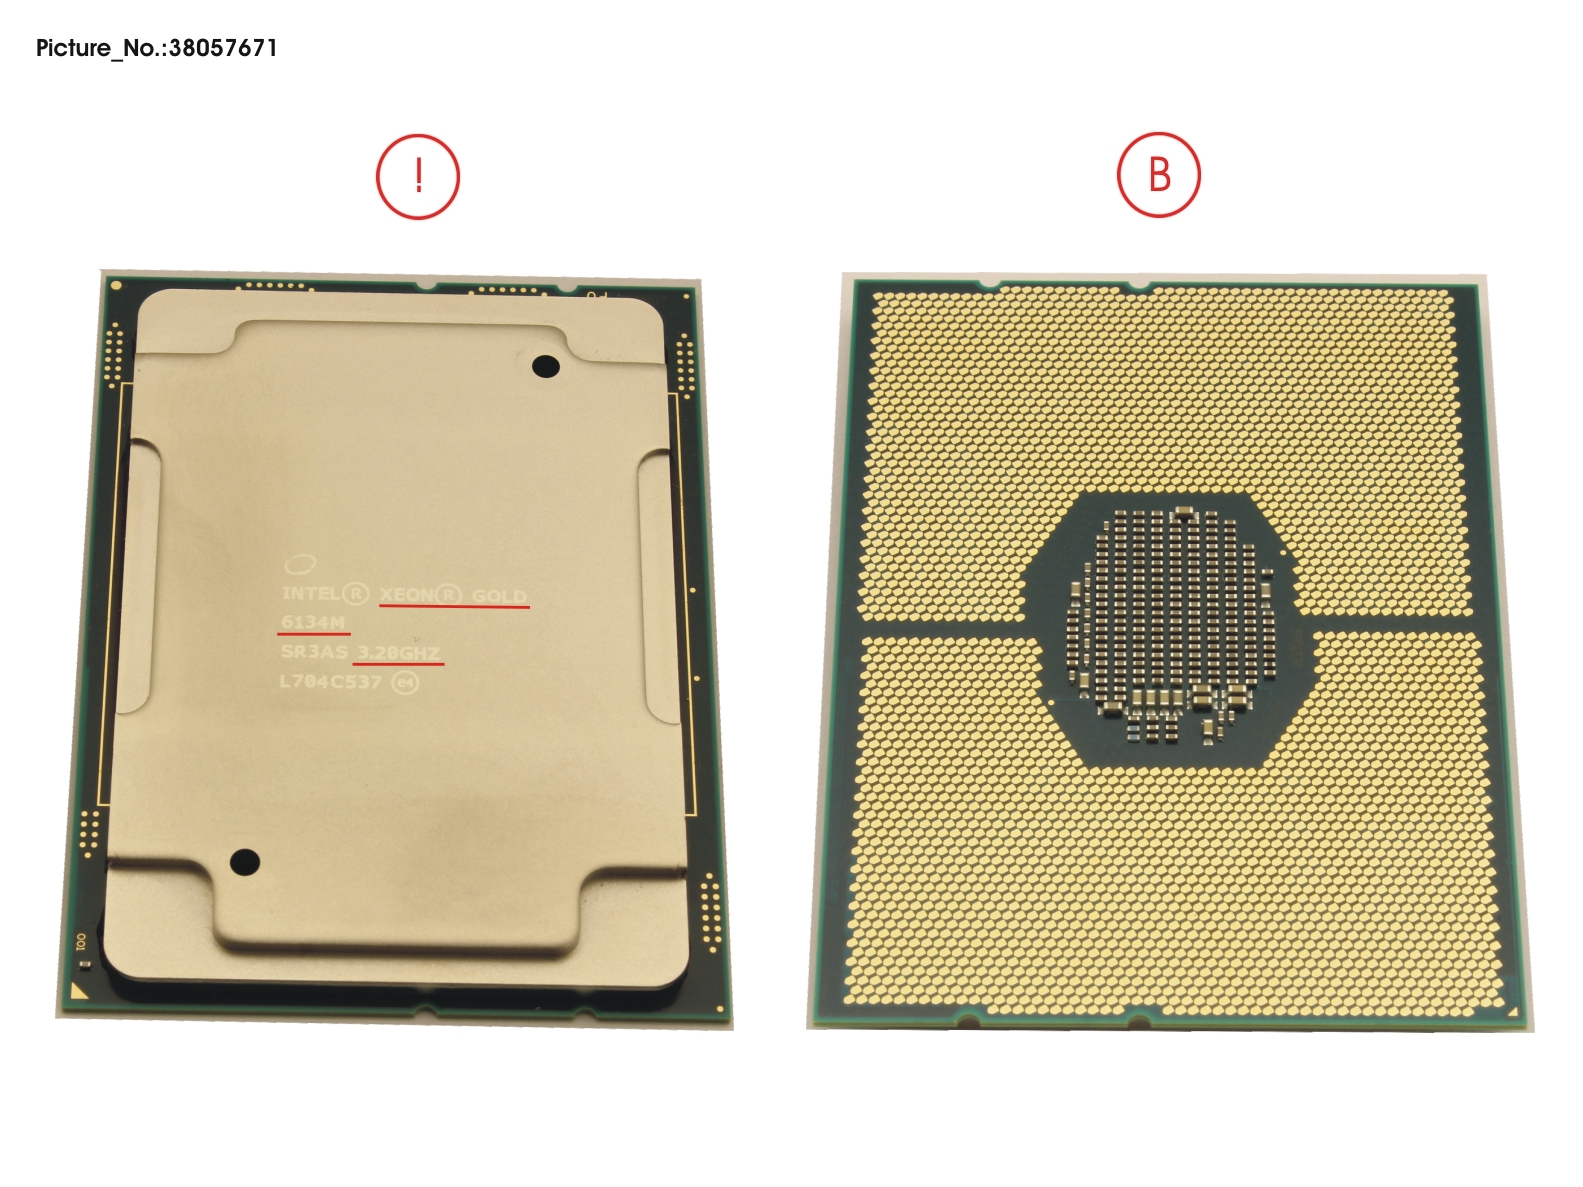 CPU XEON GOLD 6134M 3,2GHZ 130W